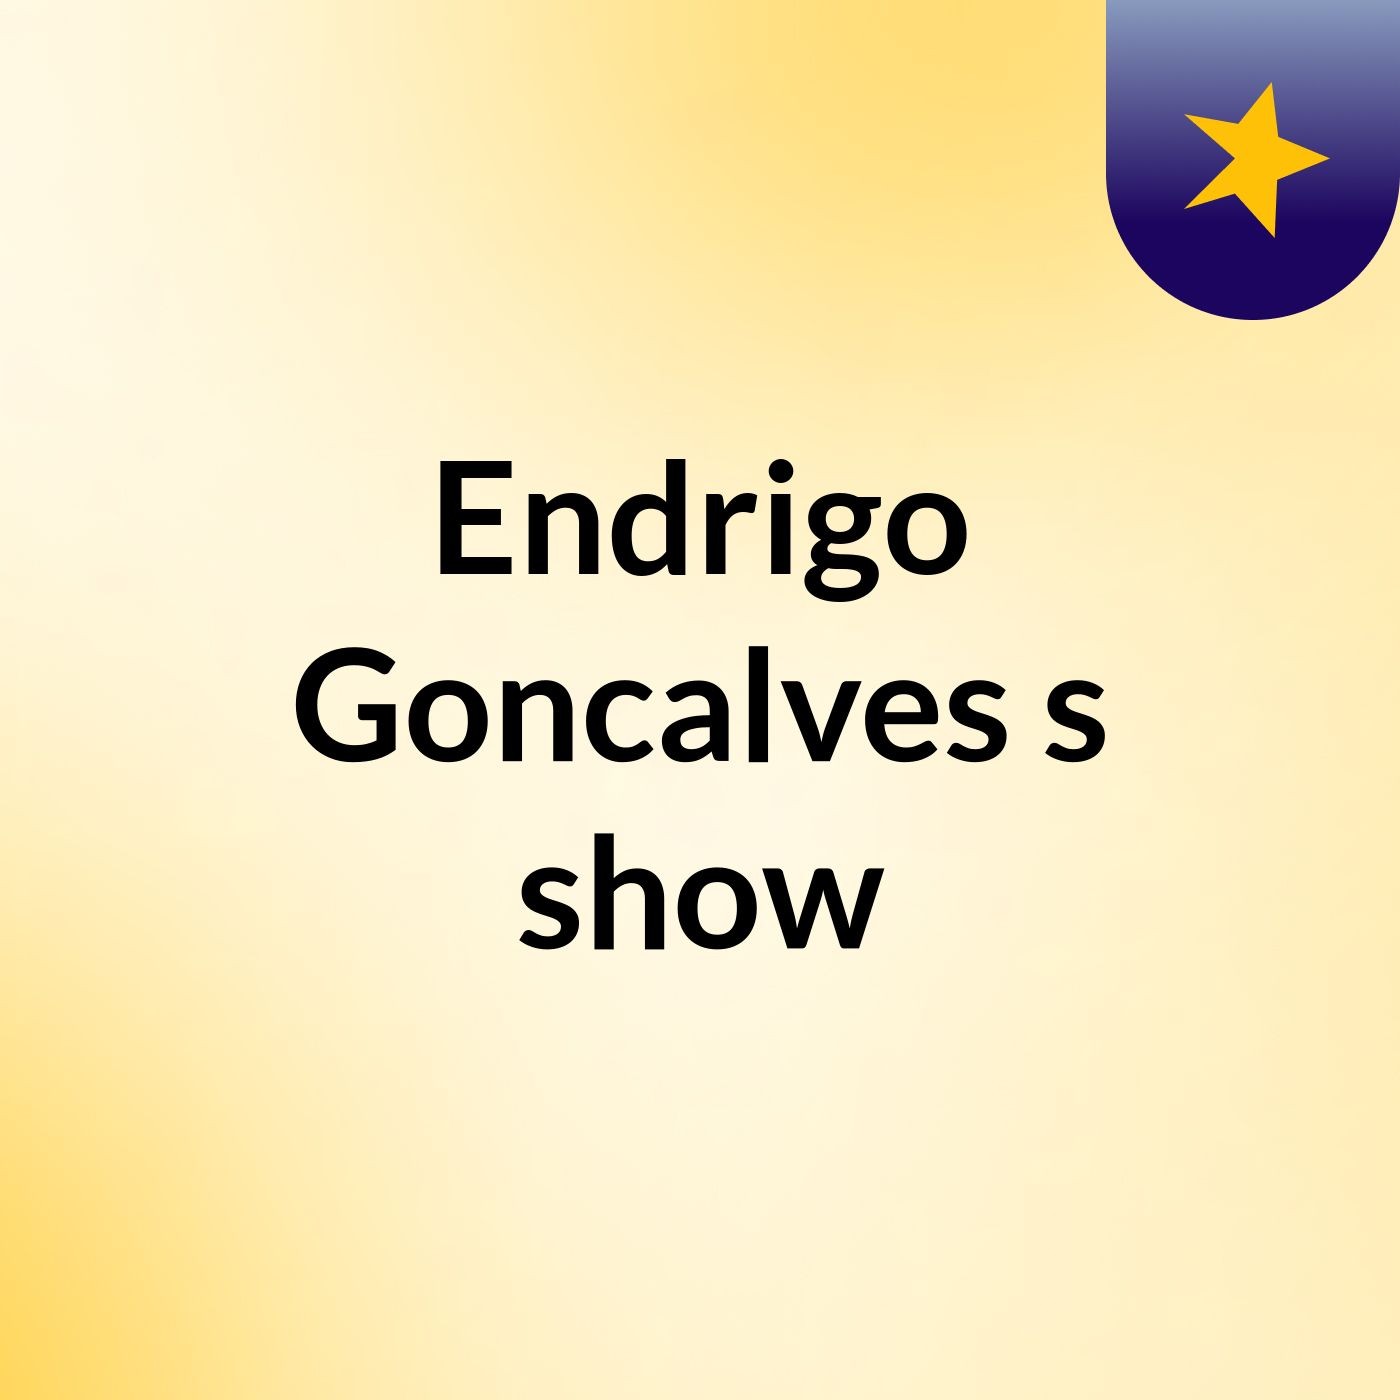 Endrigo Goncalves's show